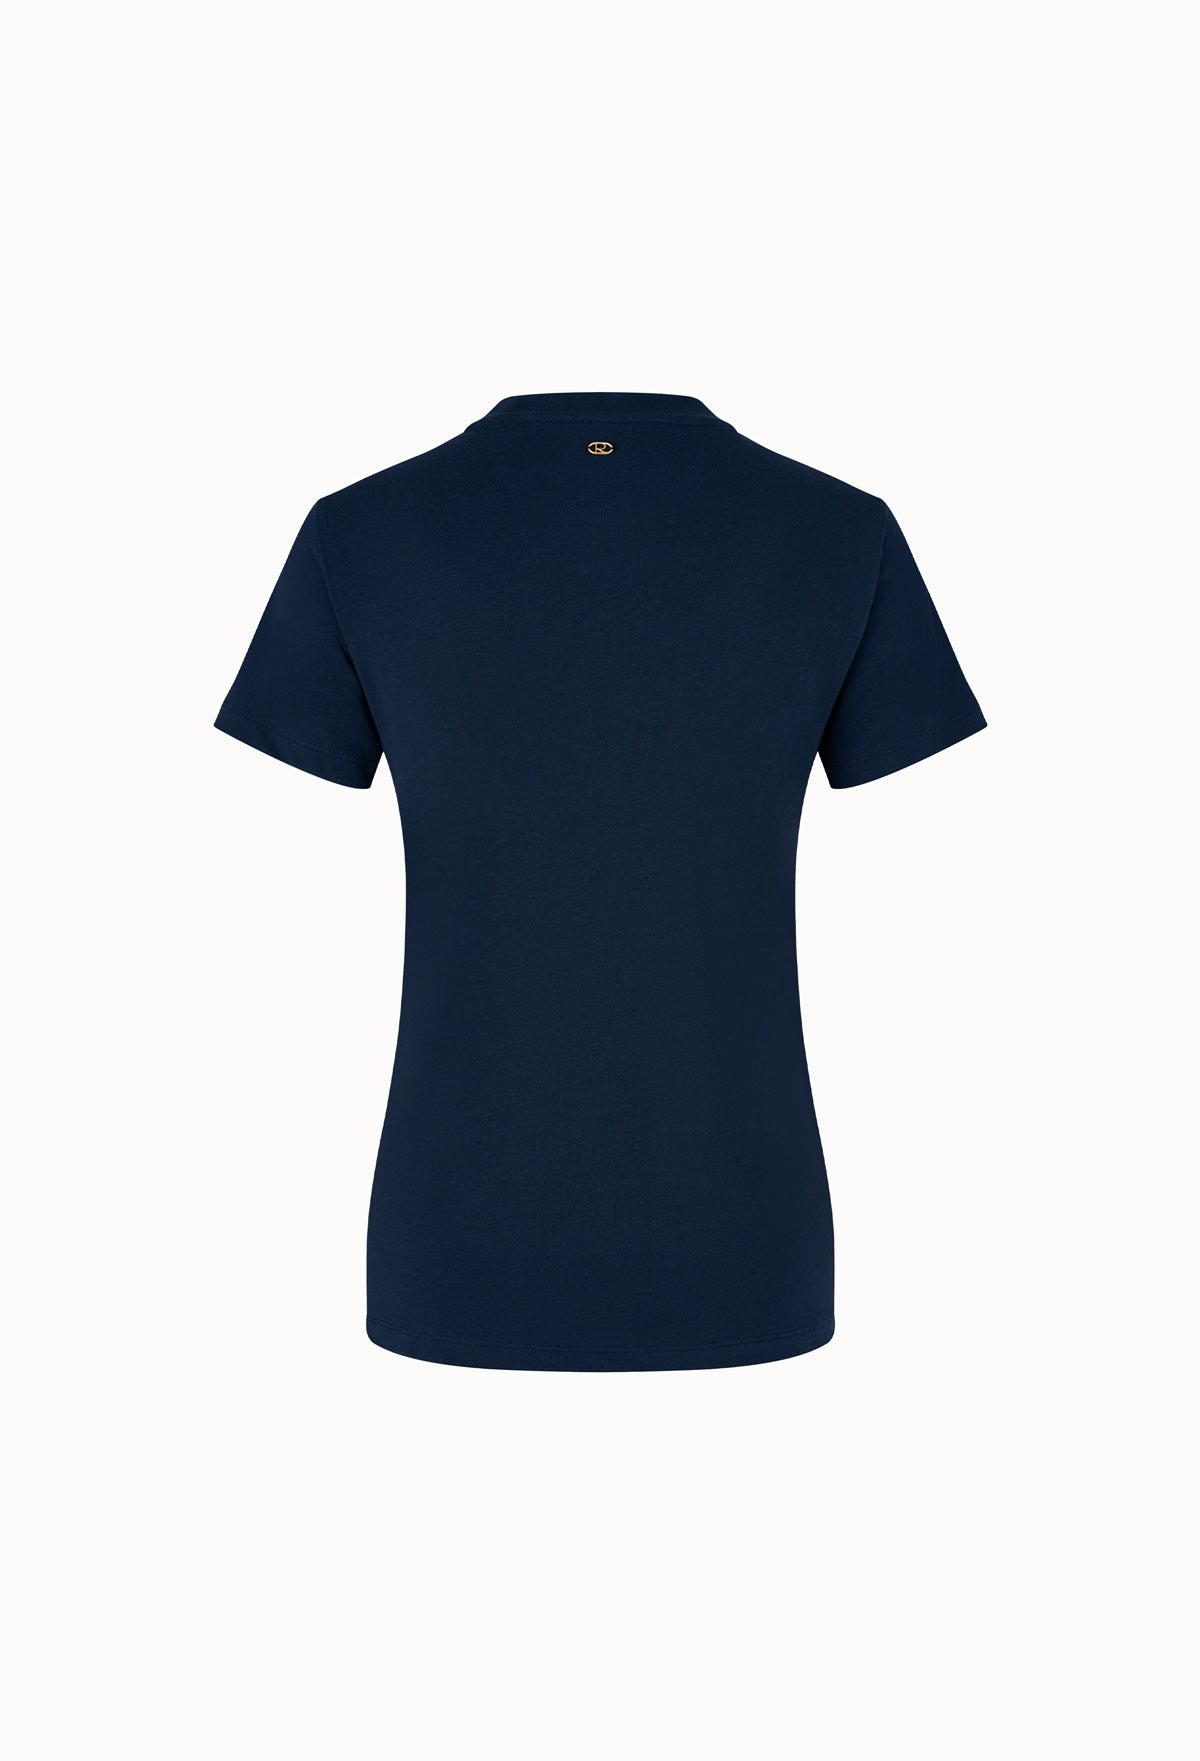 Short-sleeve Original T-shirt In Navy